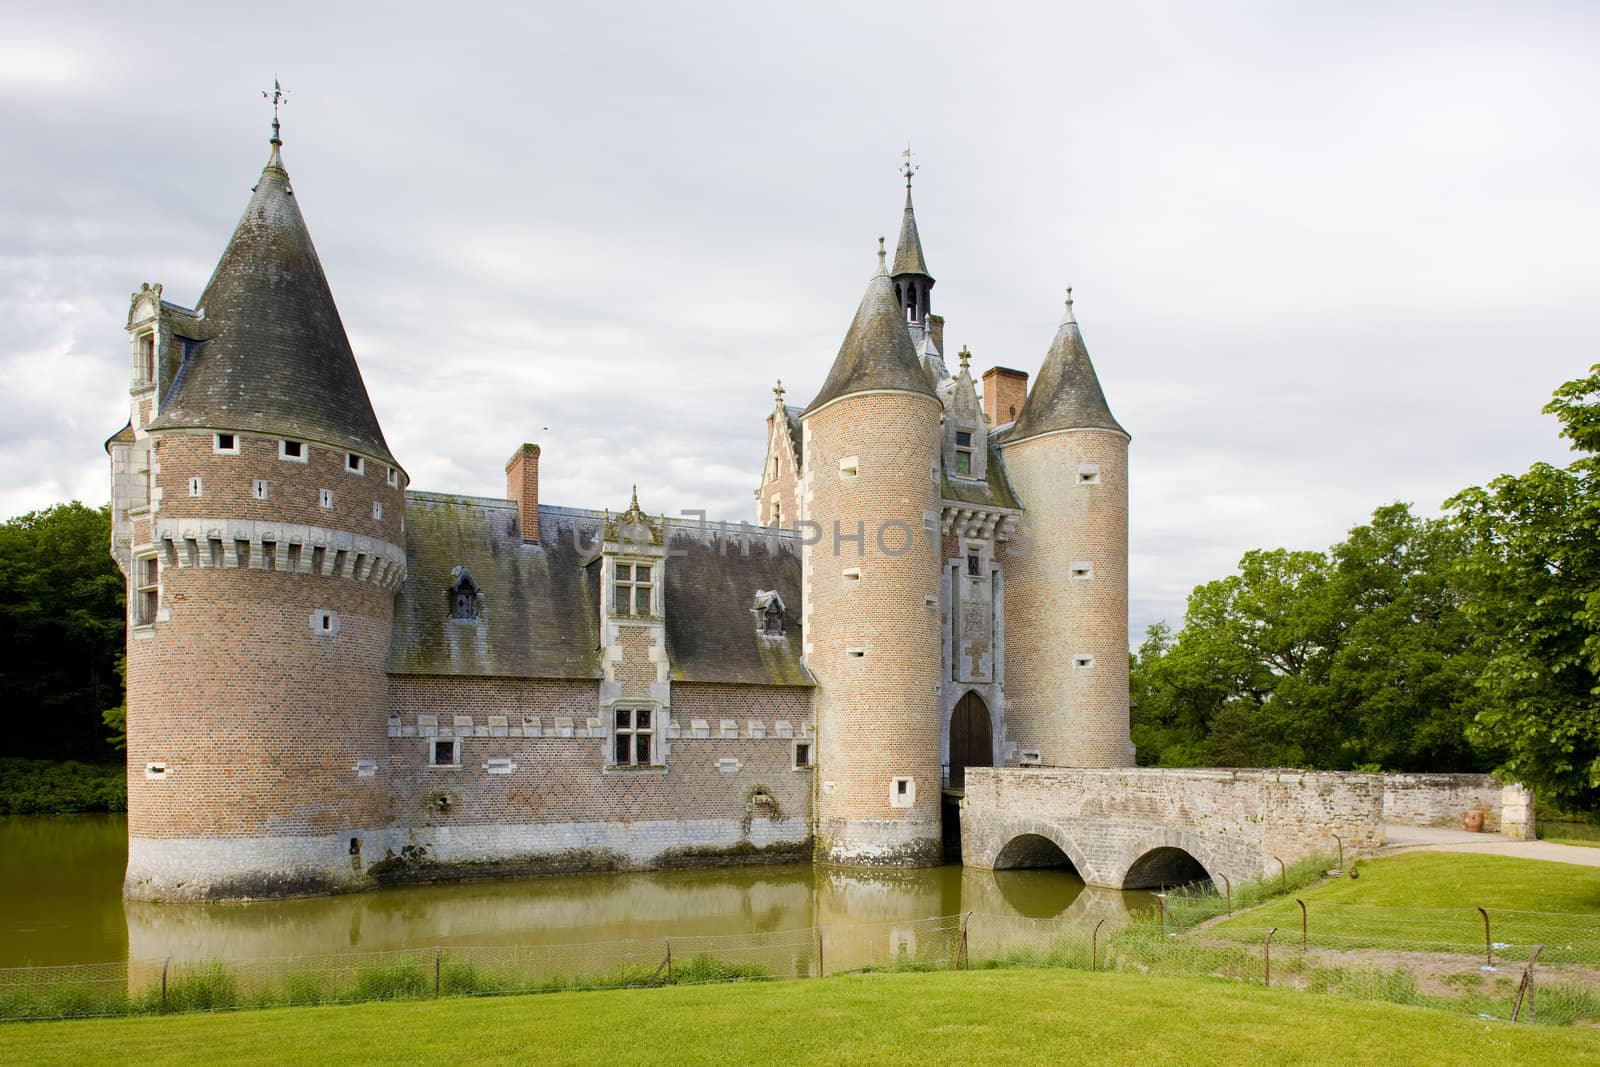 Chateau du Moulin, Lassay-sur-Croisne, Centre, France by phbcz